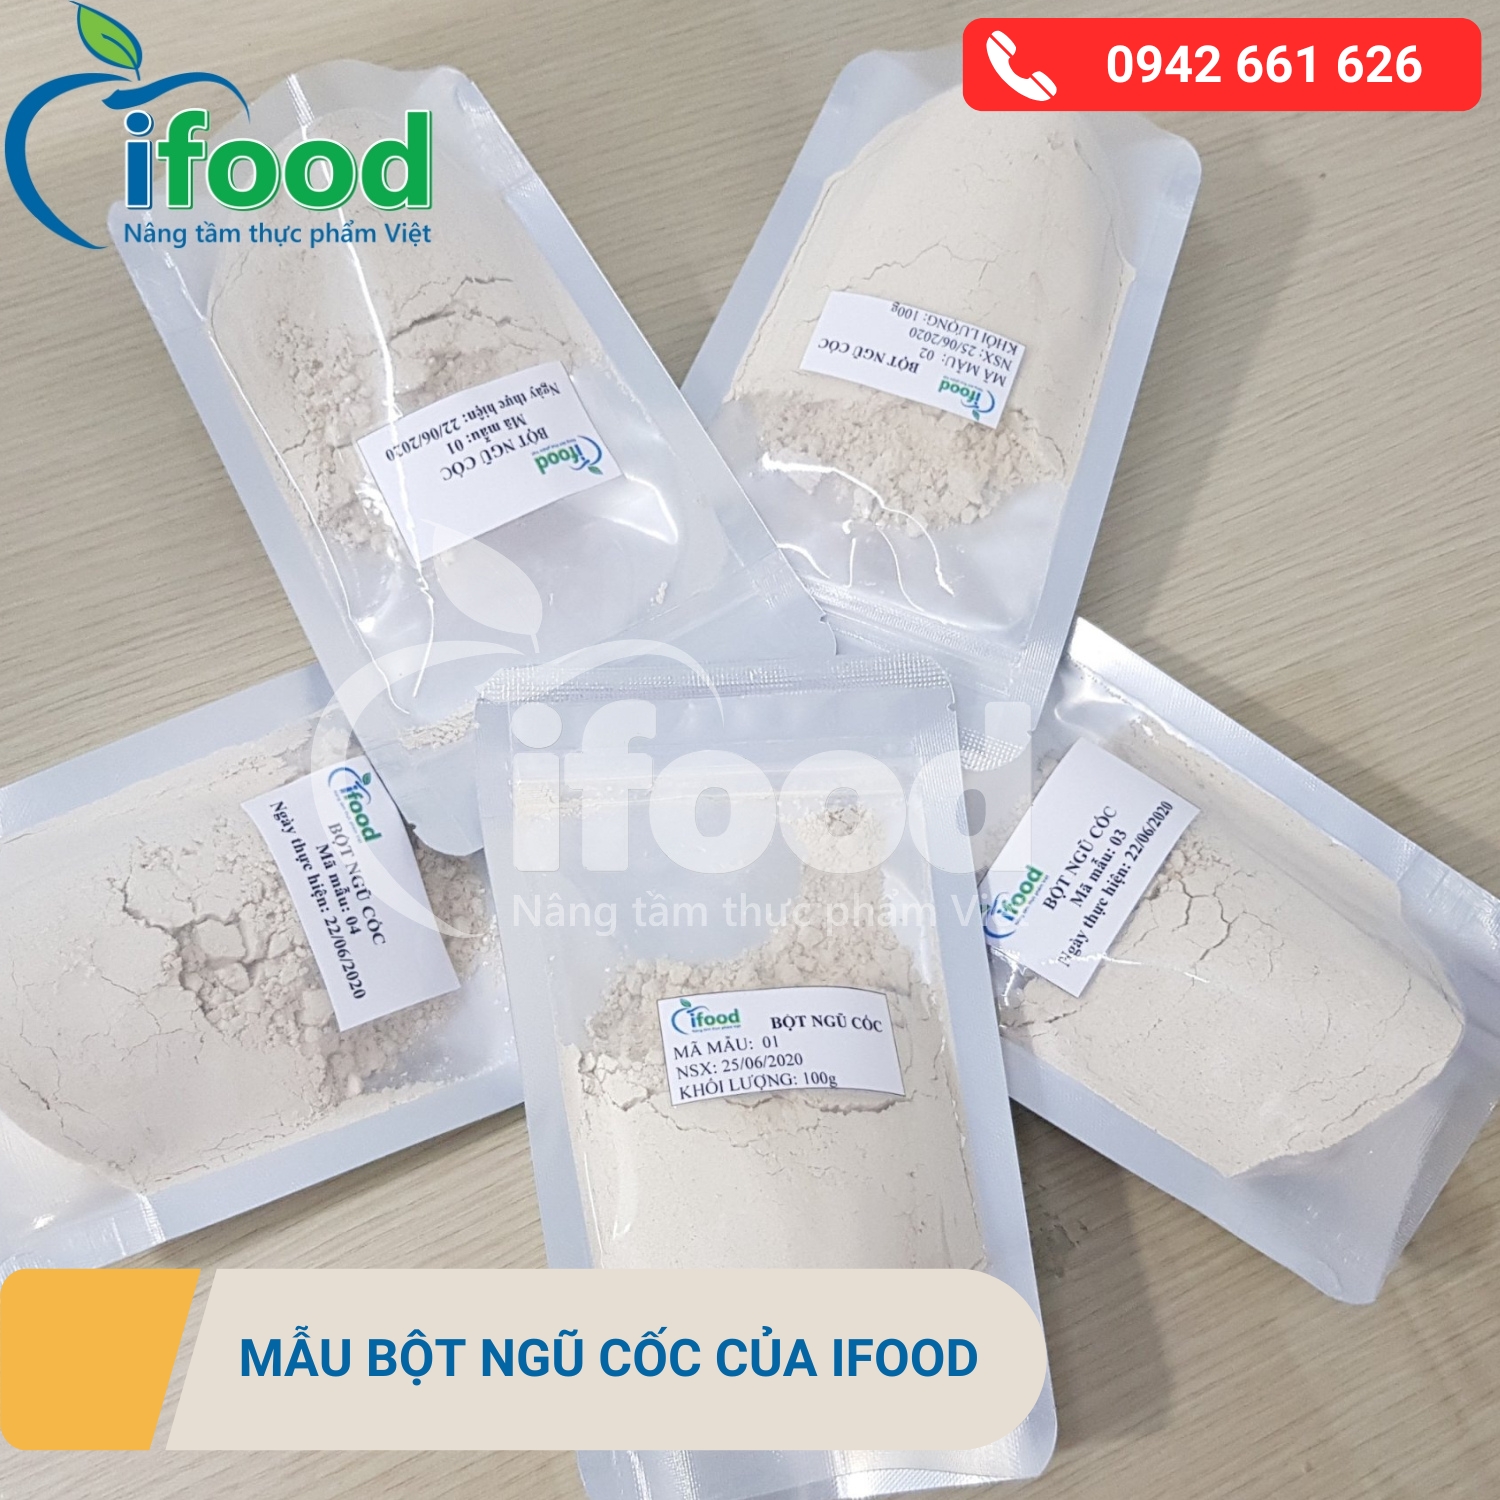 mẫu bột ngũ cốc của IFood